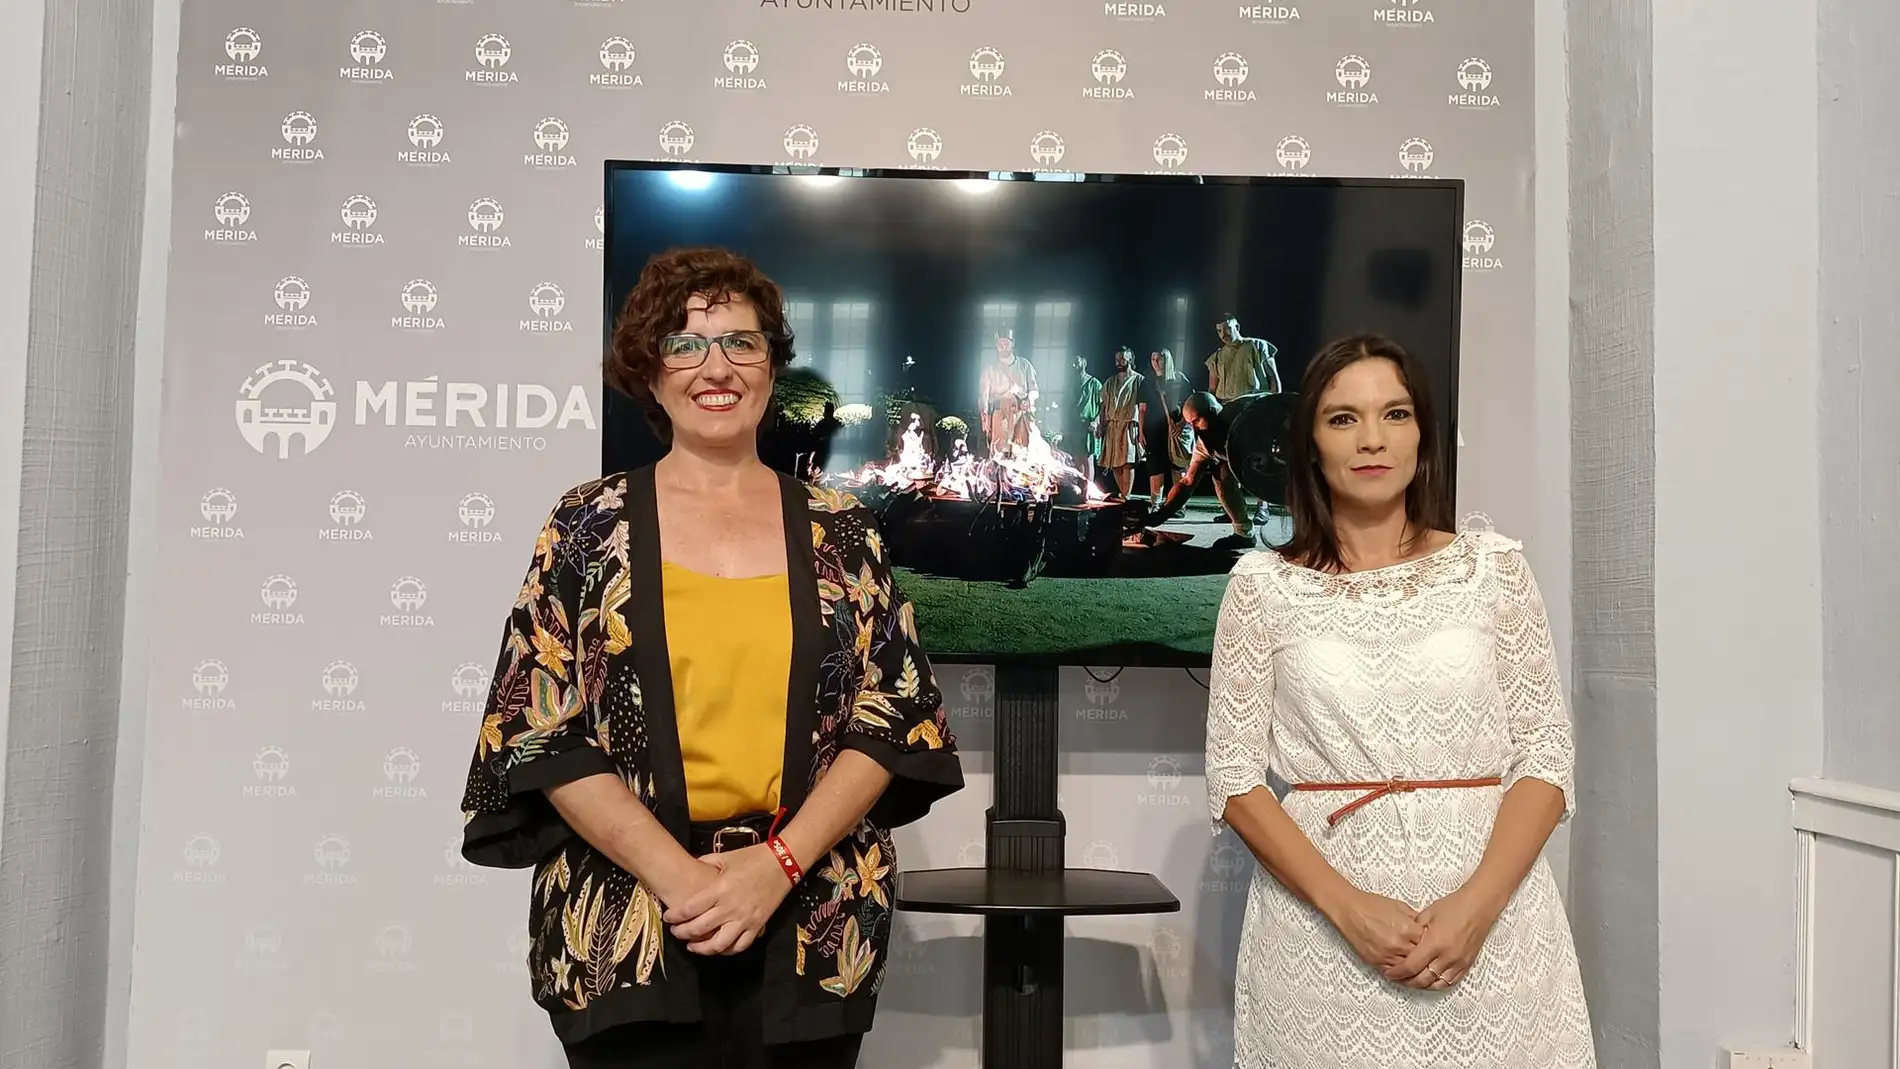 Emerita Lvdica de Mérida hará accesibles su actividades con intérpretes de lenguaje de signos y bucles magnéticos